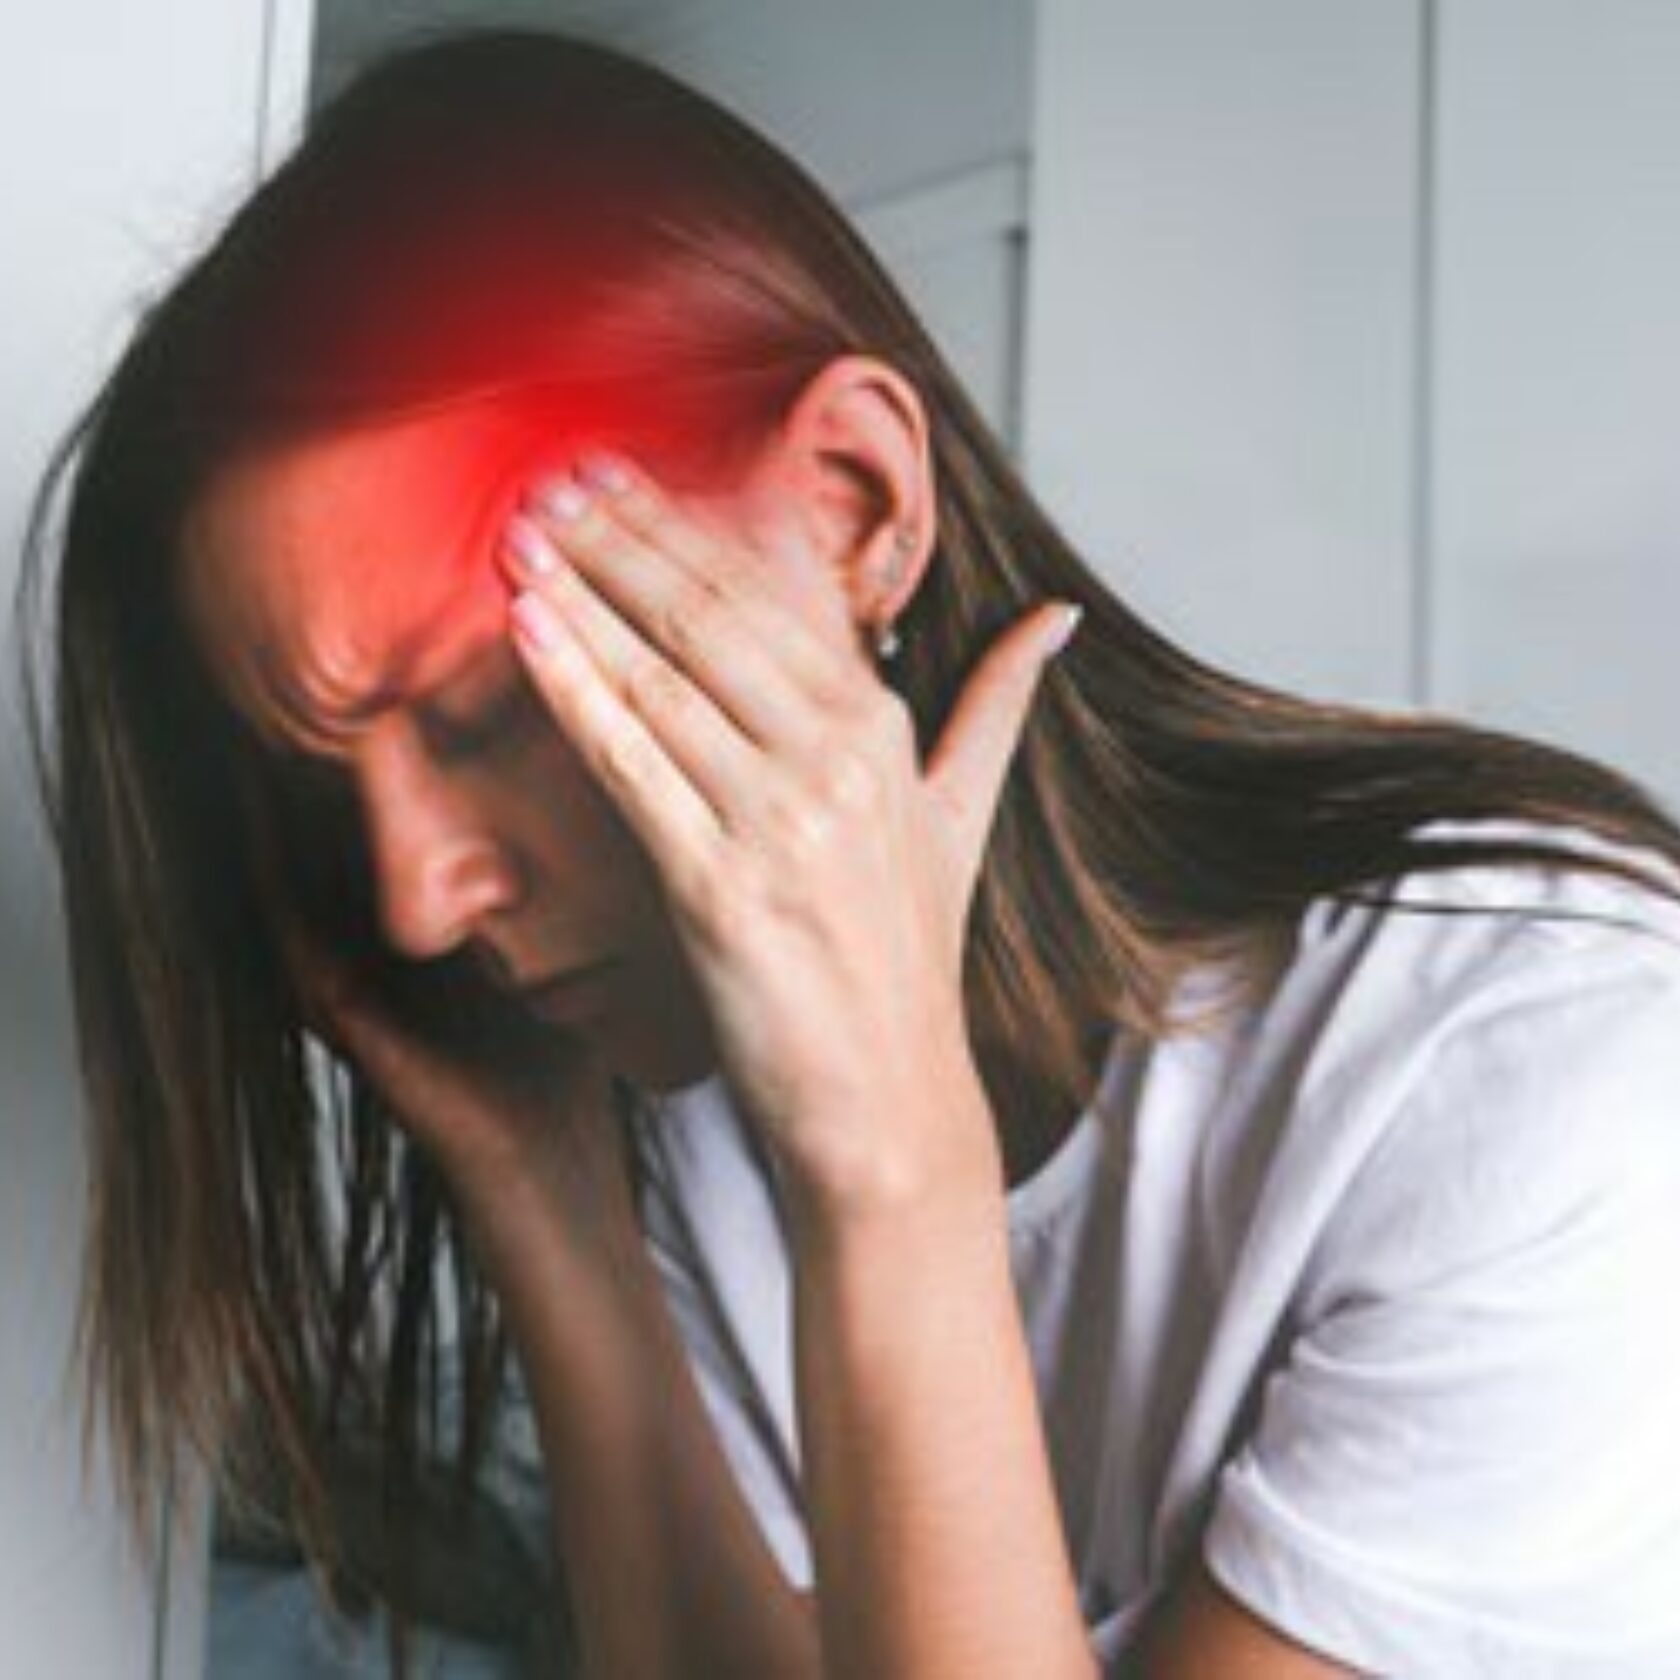 Frau fasst sich an die Schläfen und leidet offensichtlich unter starken Kopfschmerzen